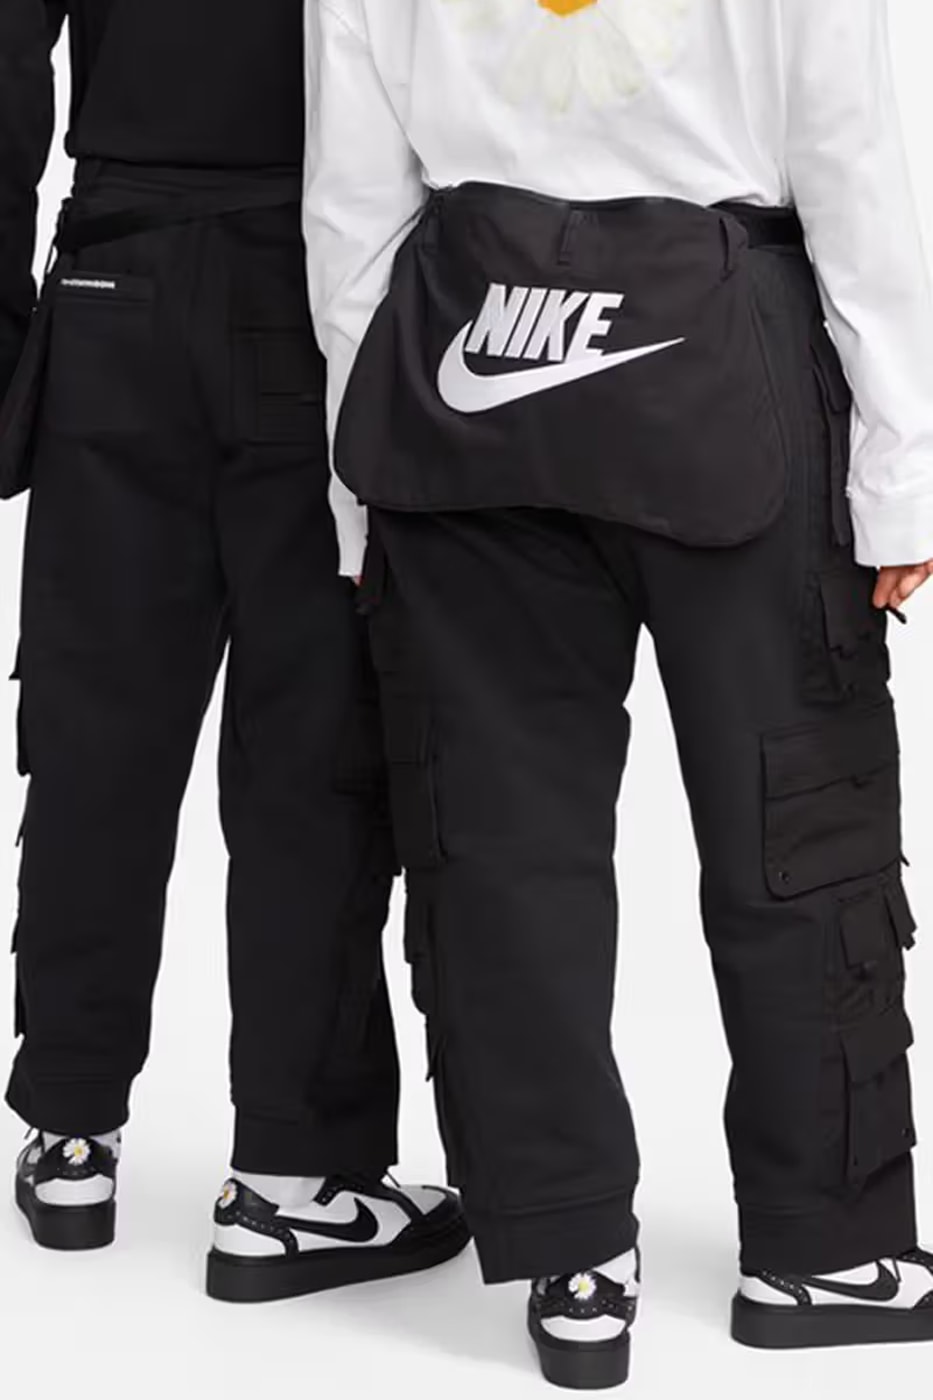 ピースマイナスワン x ナイキが新たにアパレルコレクションを発売 G-Dragon's PEACEMINUSONE and Nike Launch New Apparel Collection nike kwondo 1 panda daisy motif k-pop star swoosh technical sportswear